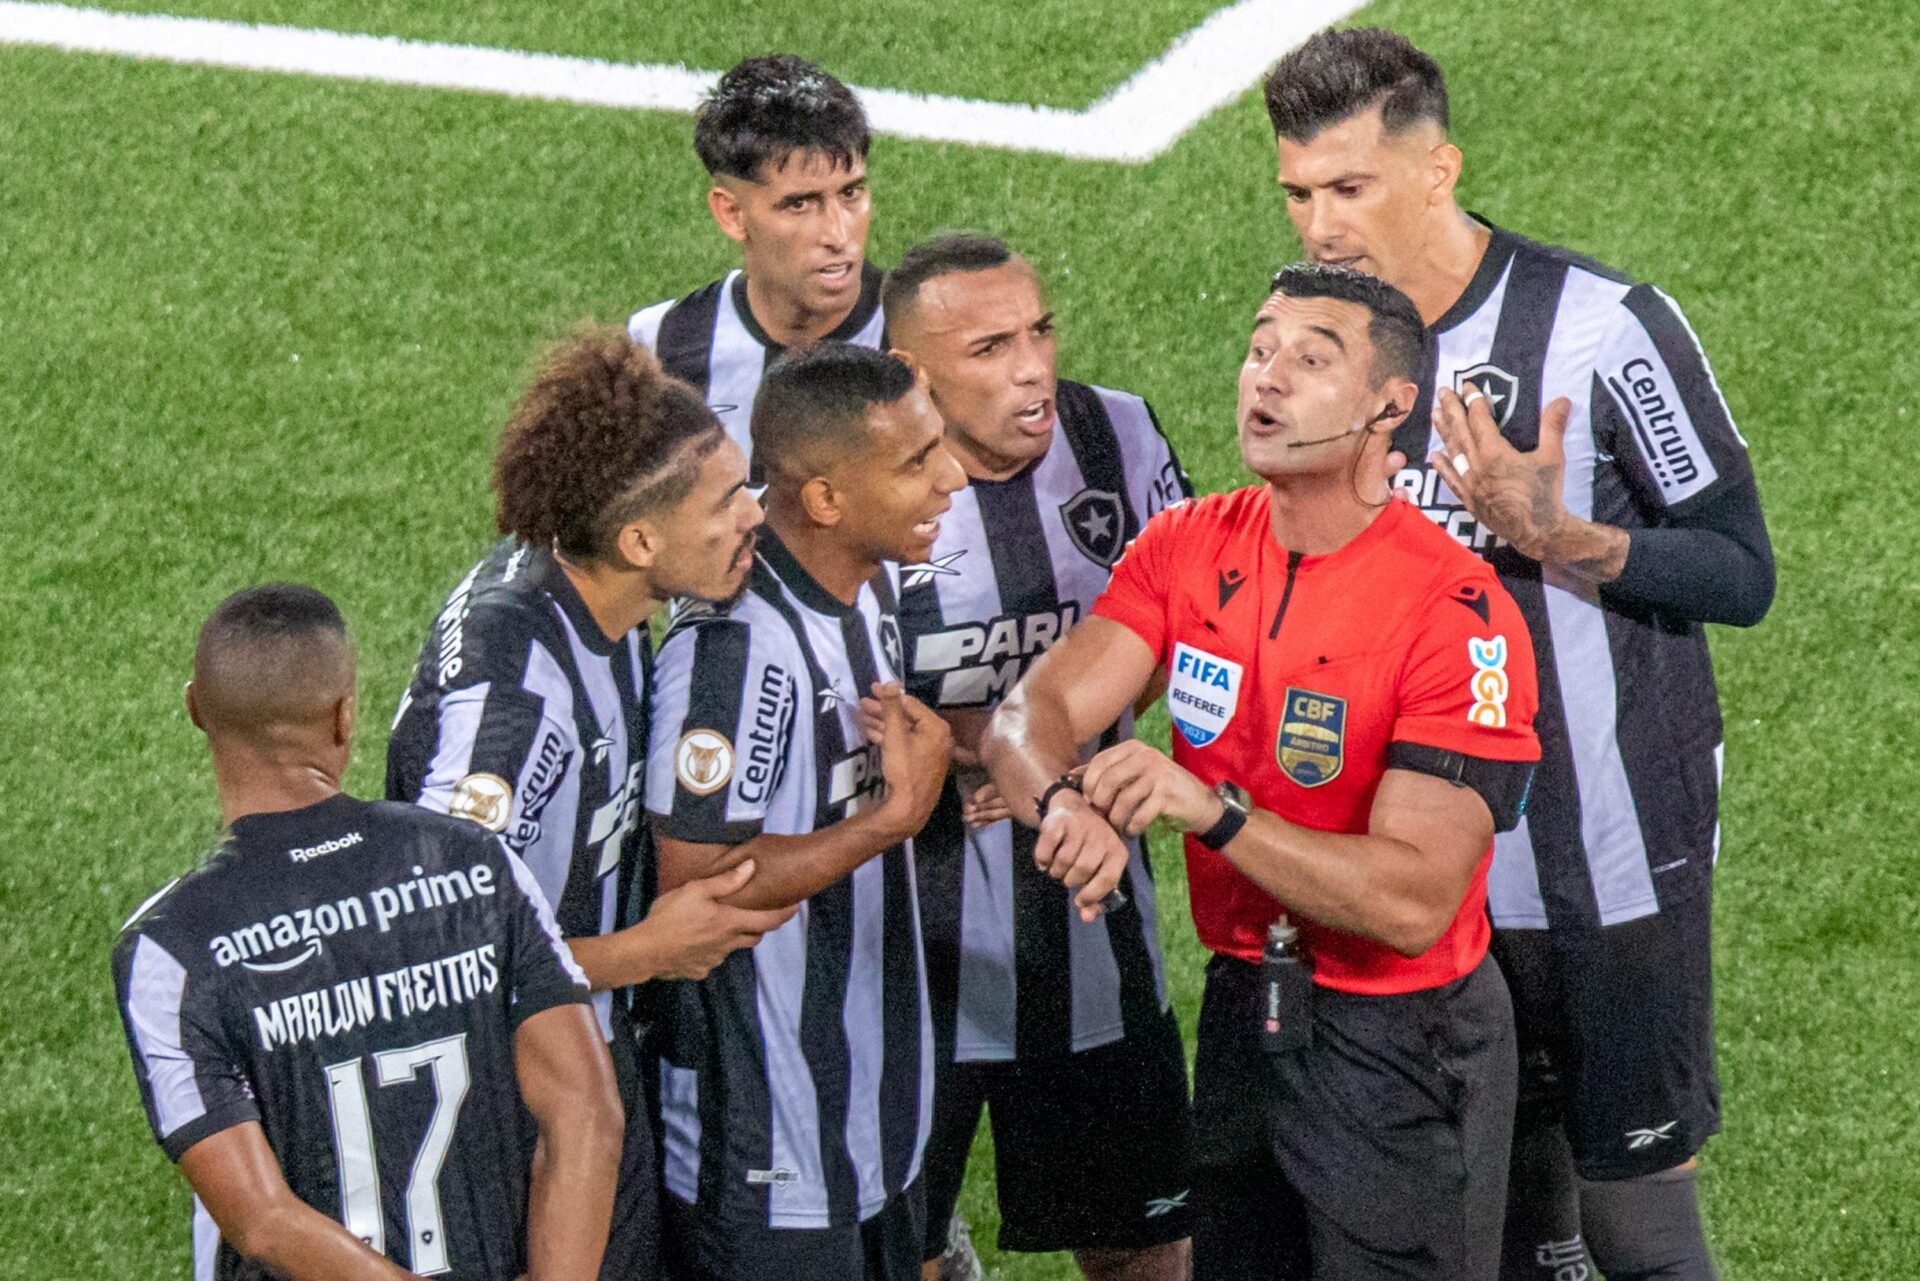 John Textor nega que tenha se arrependido de algum reforço do Botafogo e  culpa tradução: 'mantenho todos os jogadores contratados' - Esporte News  Mundo